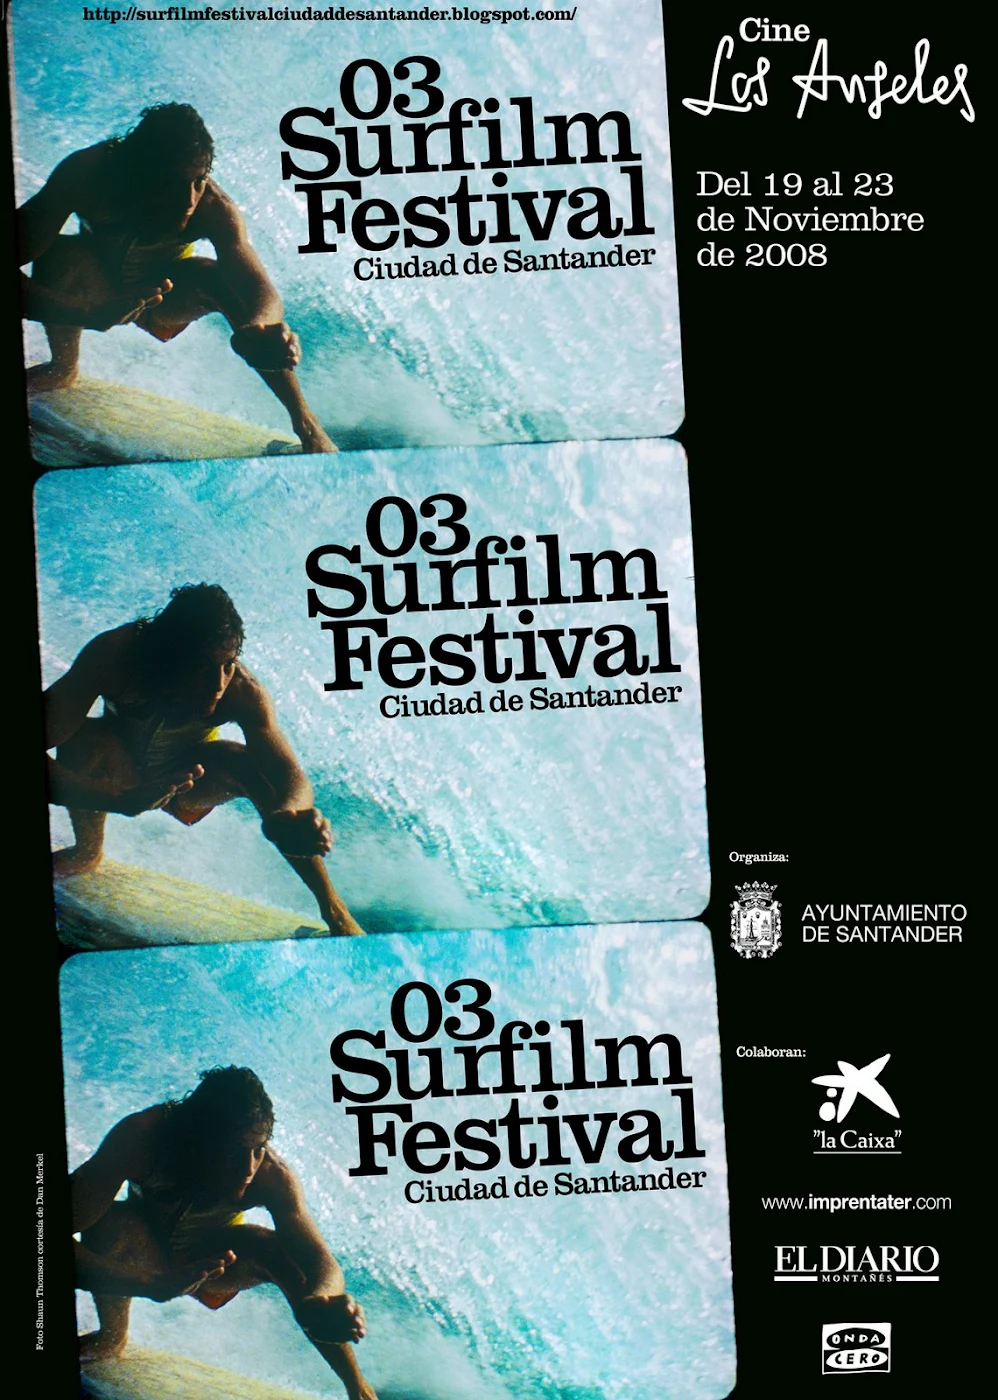 Surfilm Festival Ciudad de Santander 2008